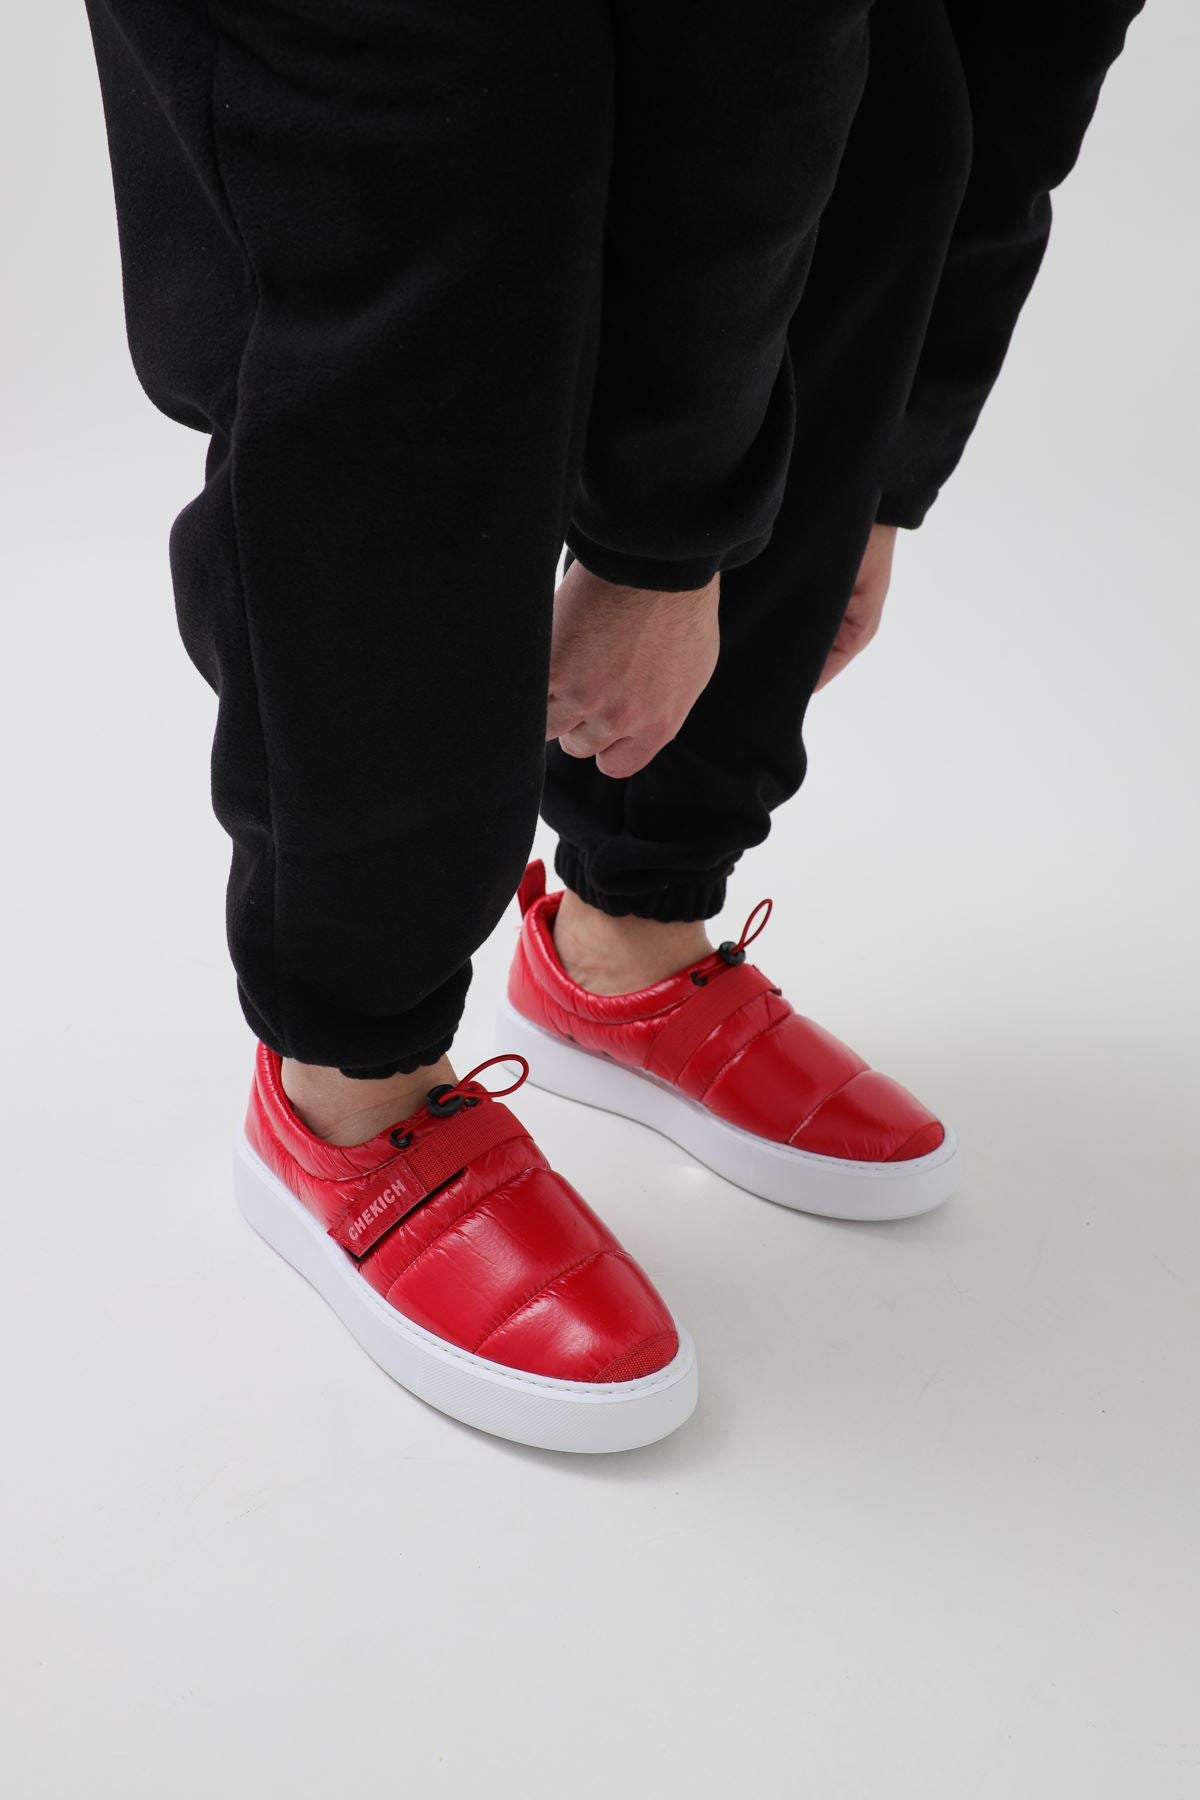 Madison Claret Red Sneakers – Men's Priorities